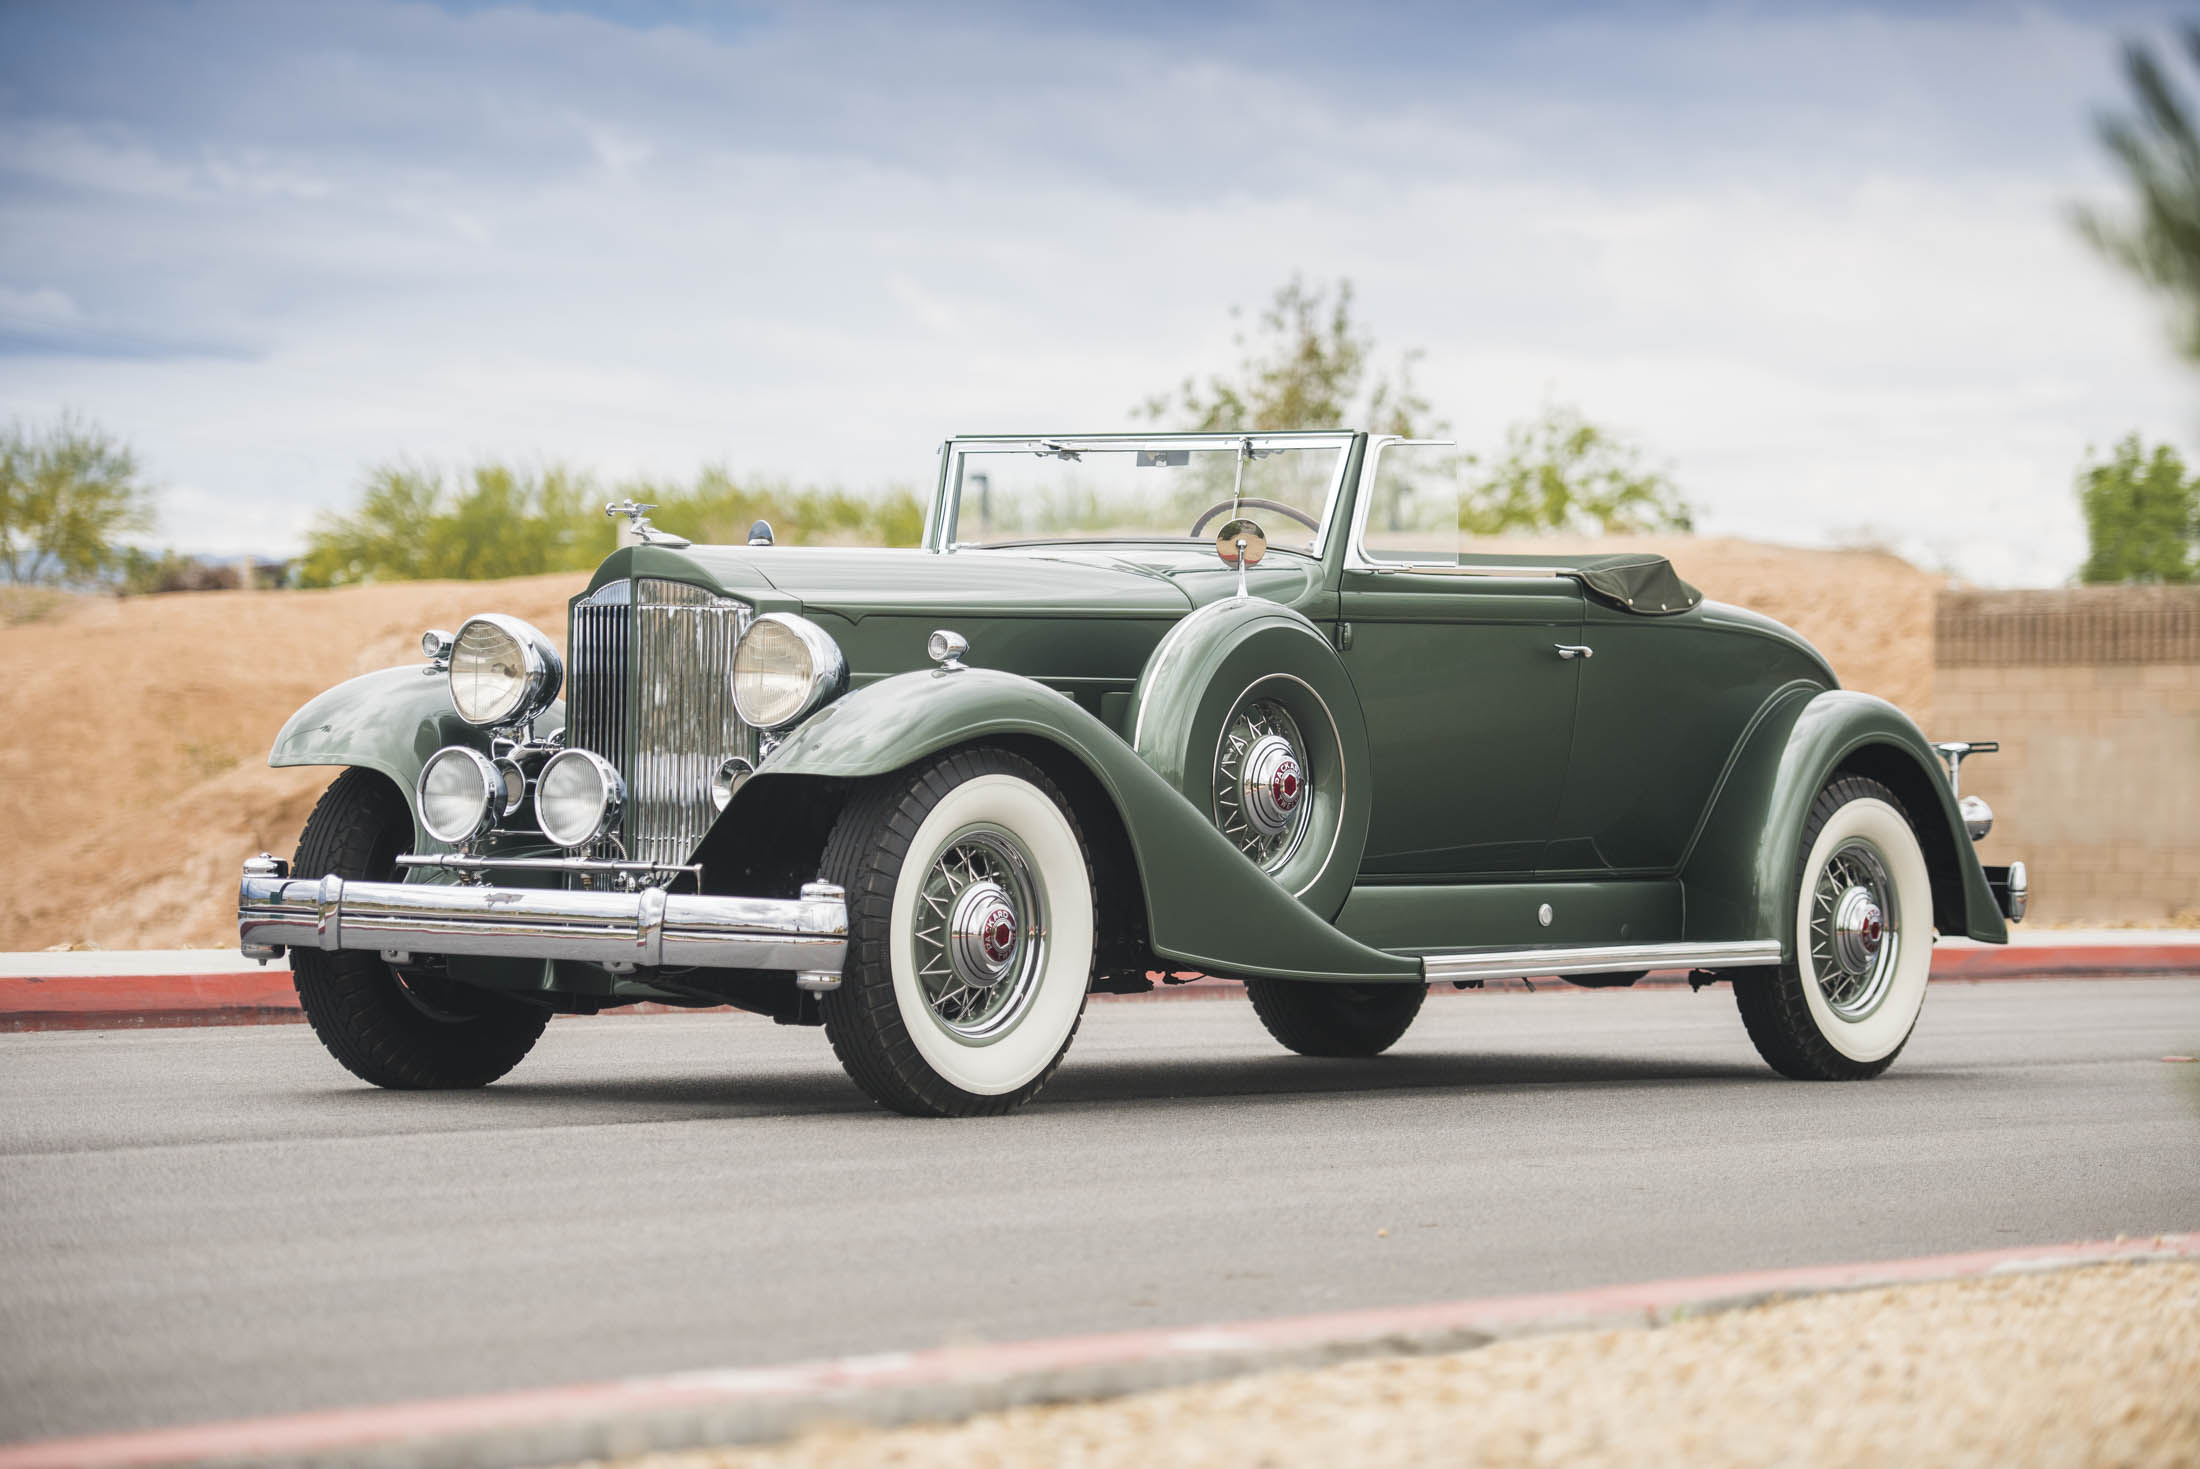 
Một thương hiệu xe ít người biến đến là Packard cũng có những chiếc xe biểu tượng và điển hình đó là 1933 Packard Twelve Coupe Roadster. Chiếc xe này được trang bị động cơ V12 cùng hộp số sàn 3 cấp và có công suất tối đa tới 160 mã lực.
